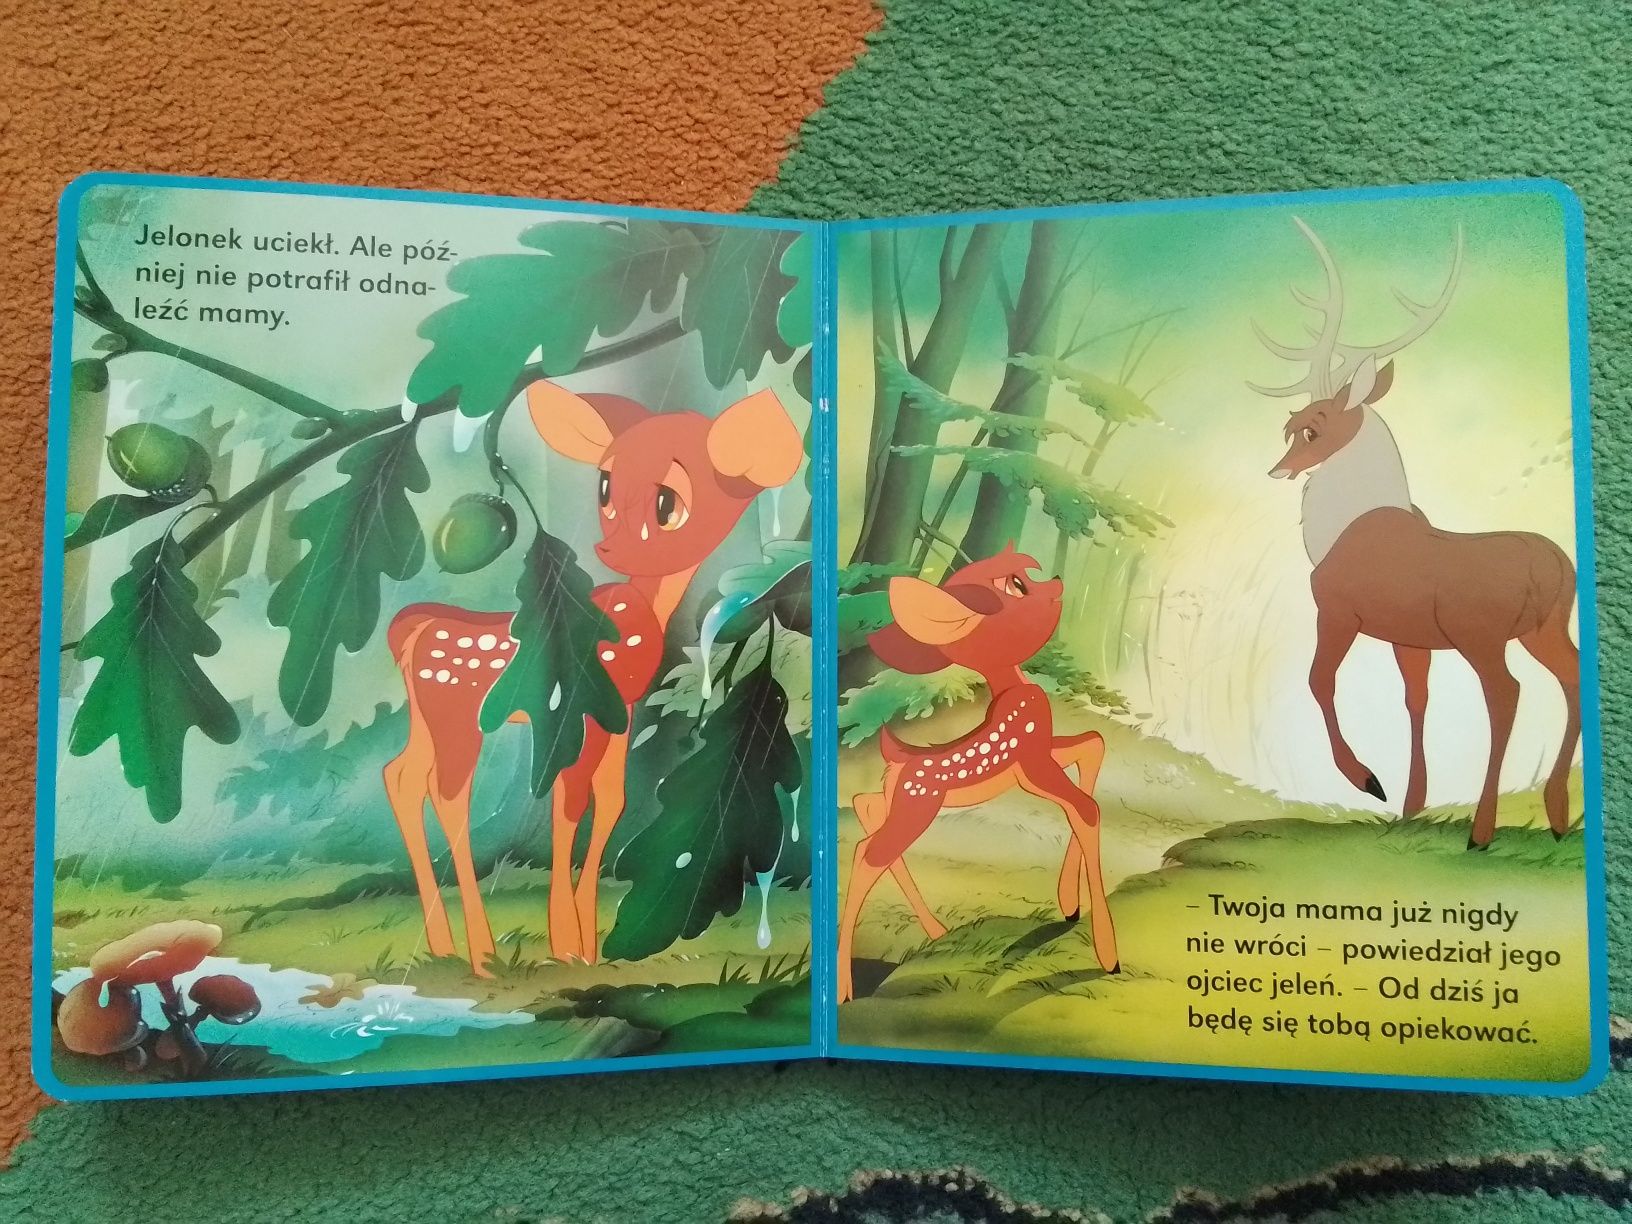 Książeczki Kot w butach, Czerwony Kapturek, Bambi